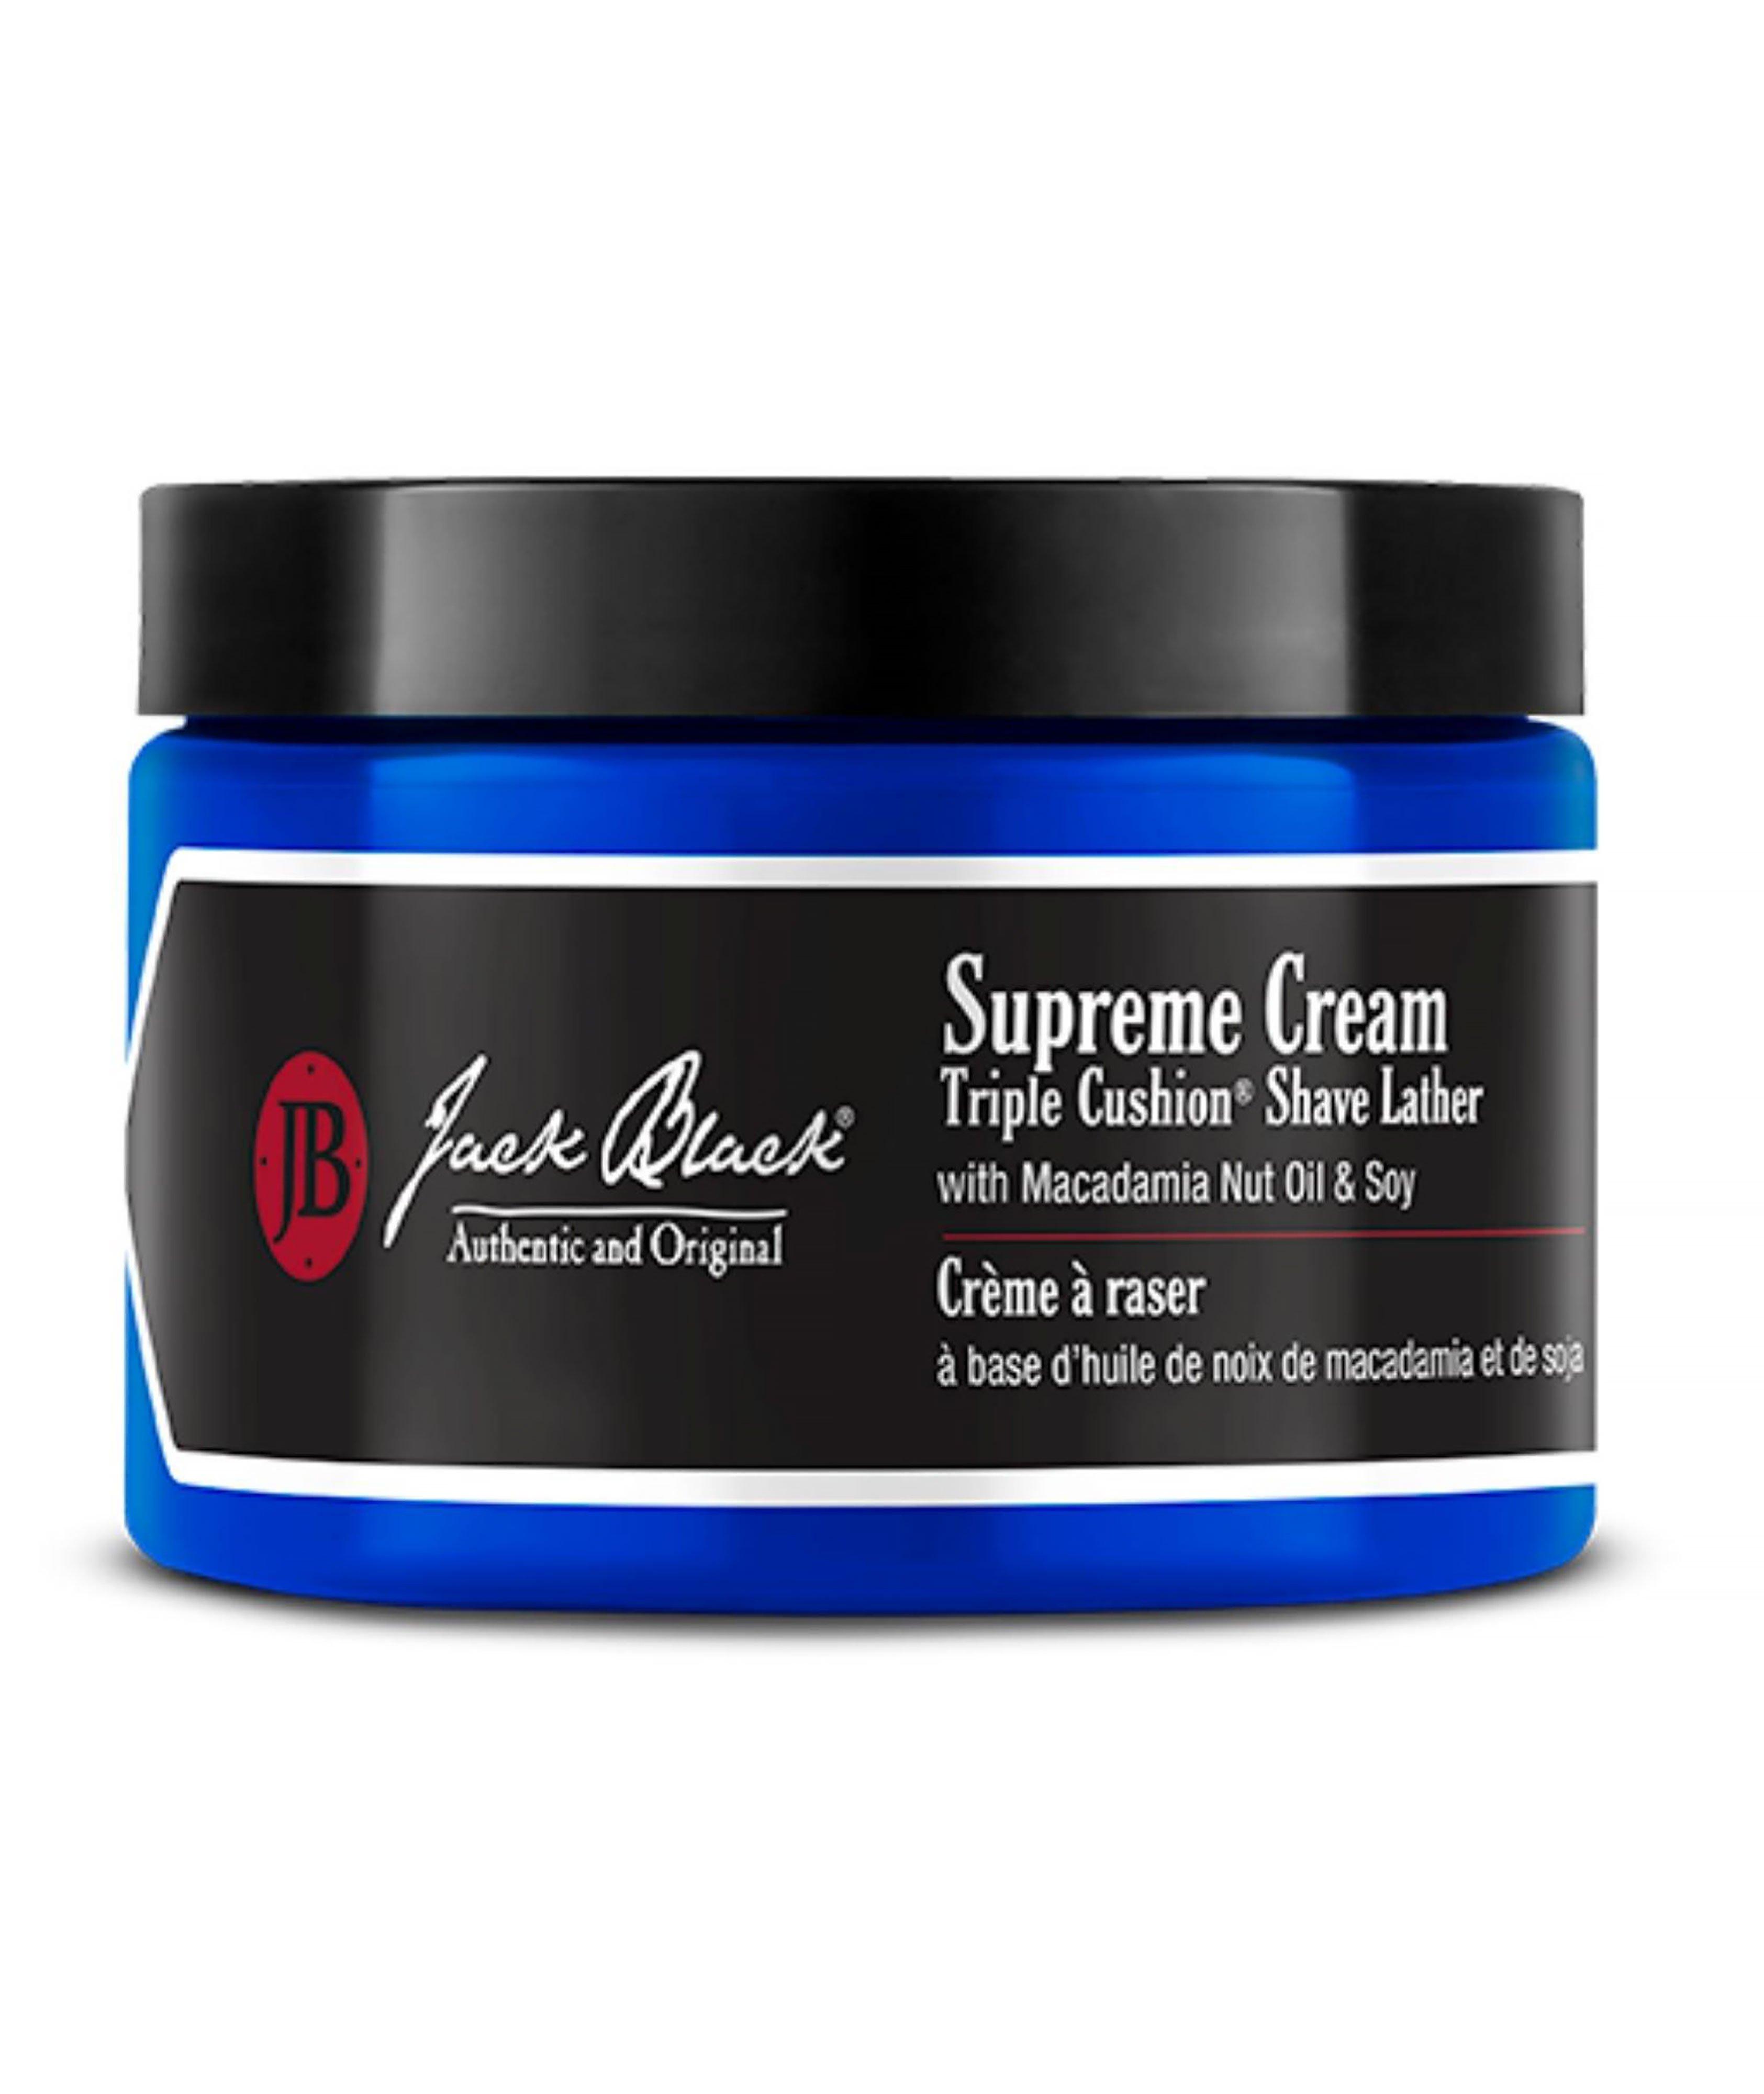 Supreme Cream Shave Lather image 0